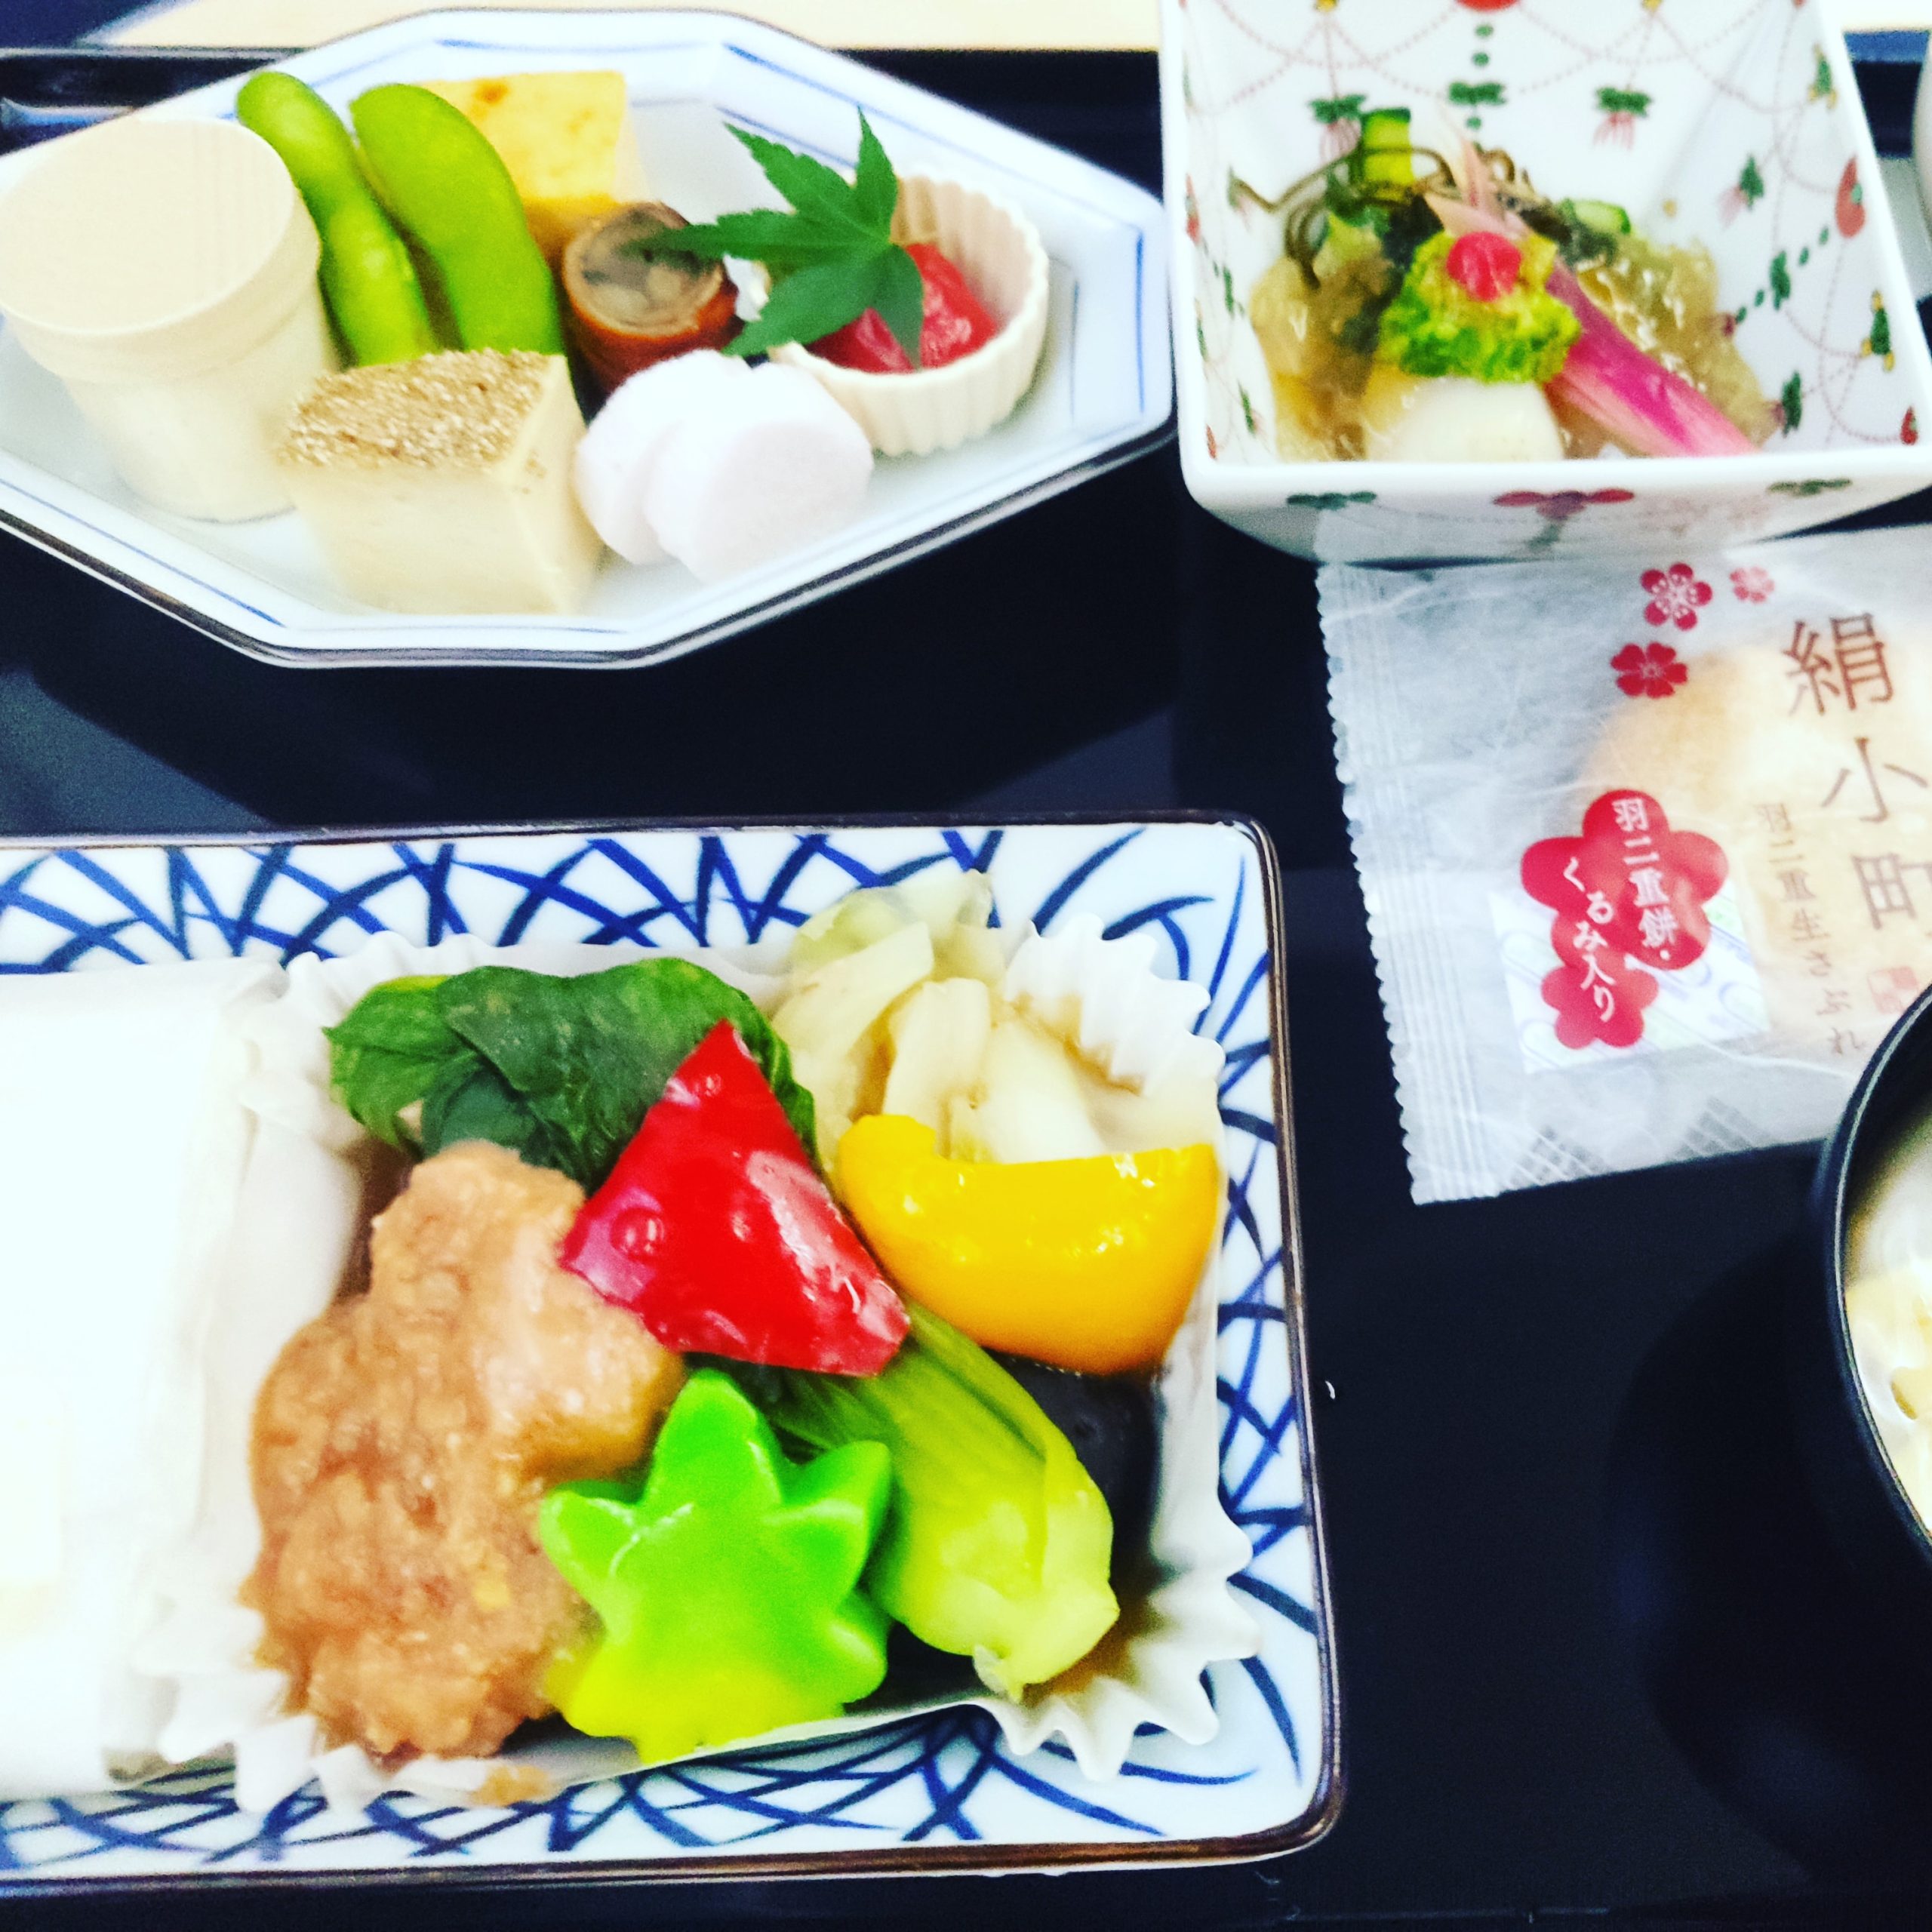 ANANH891羽田ホーチミン便ビジネスクラスの機内食